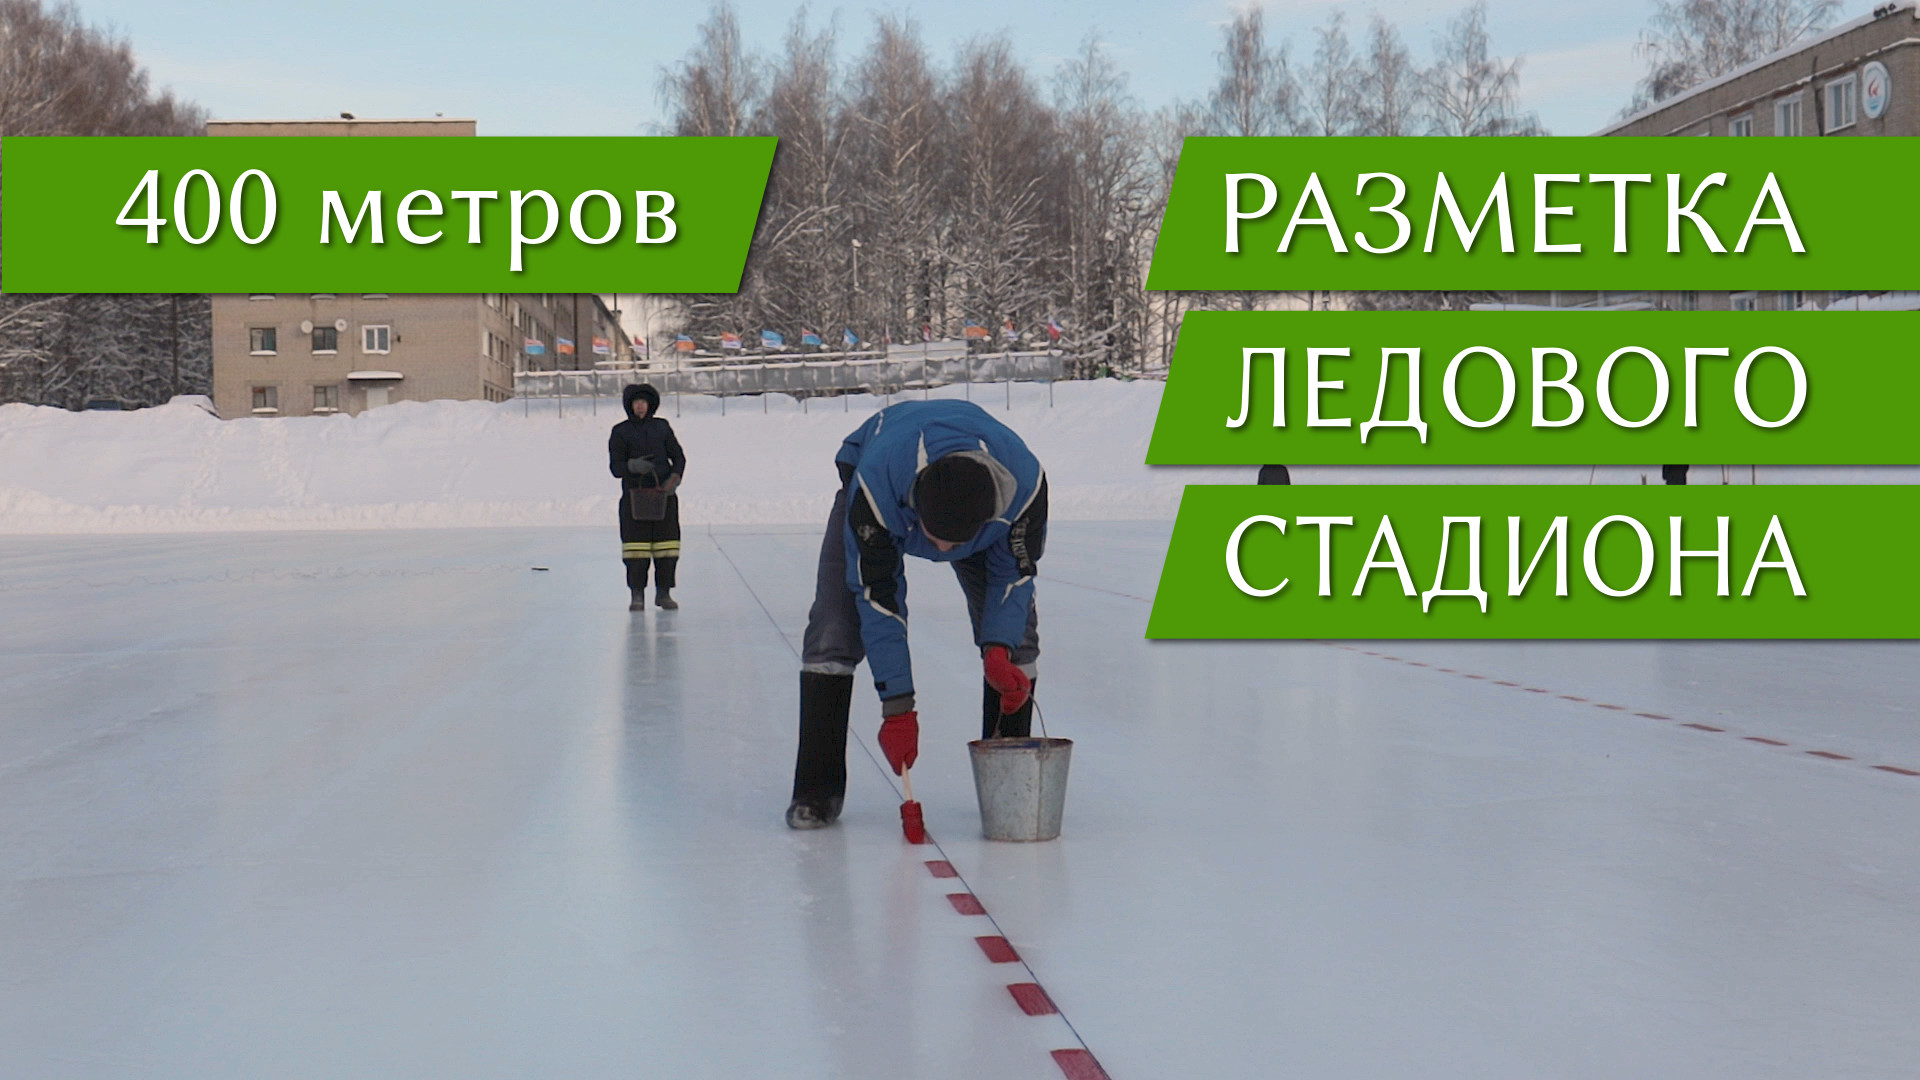 Разметка конькобежного ледового стадиона, Кирово-Чепецк 2021